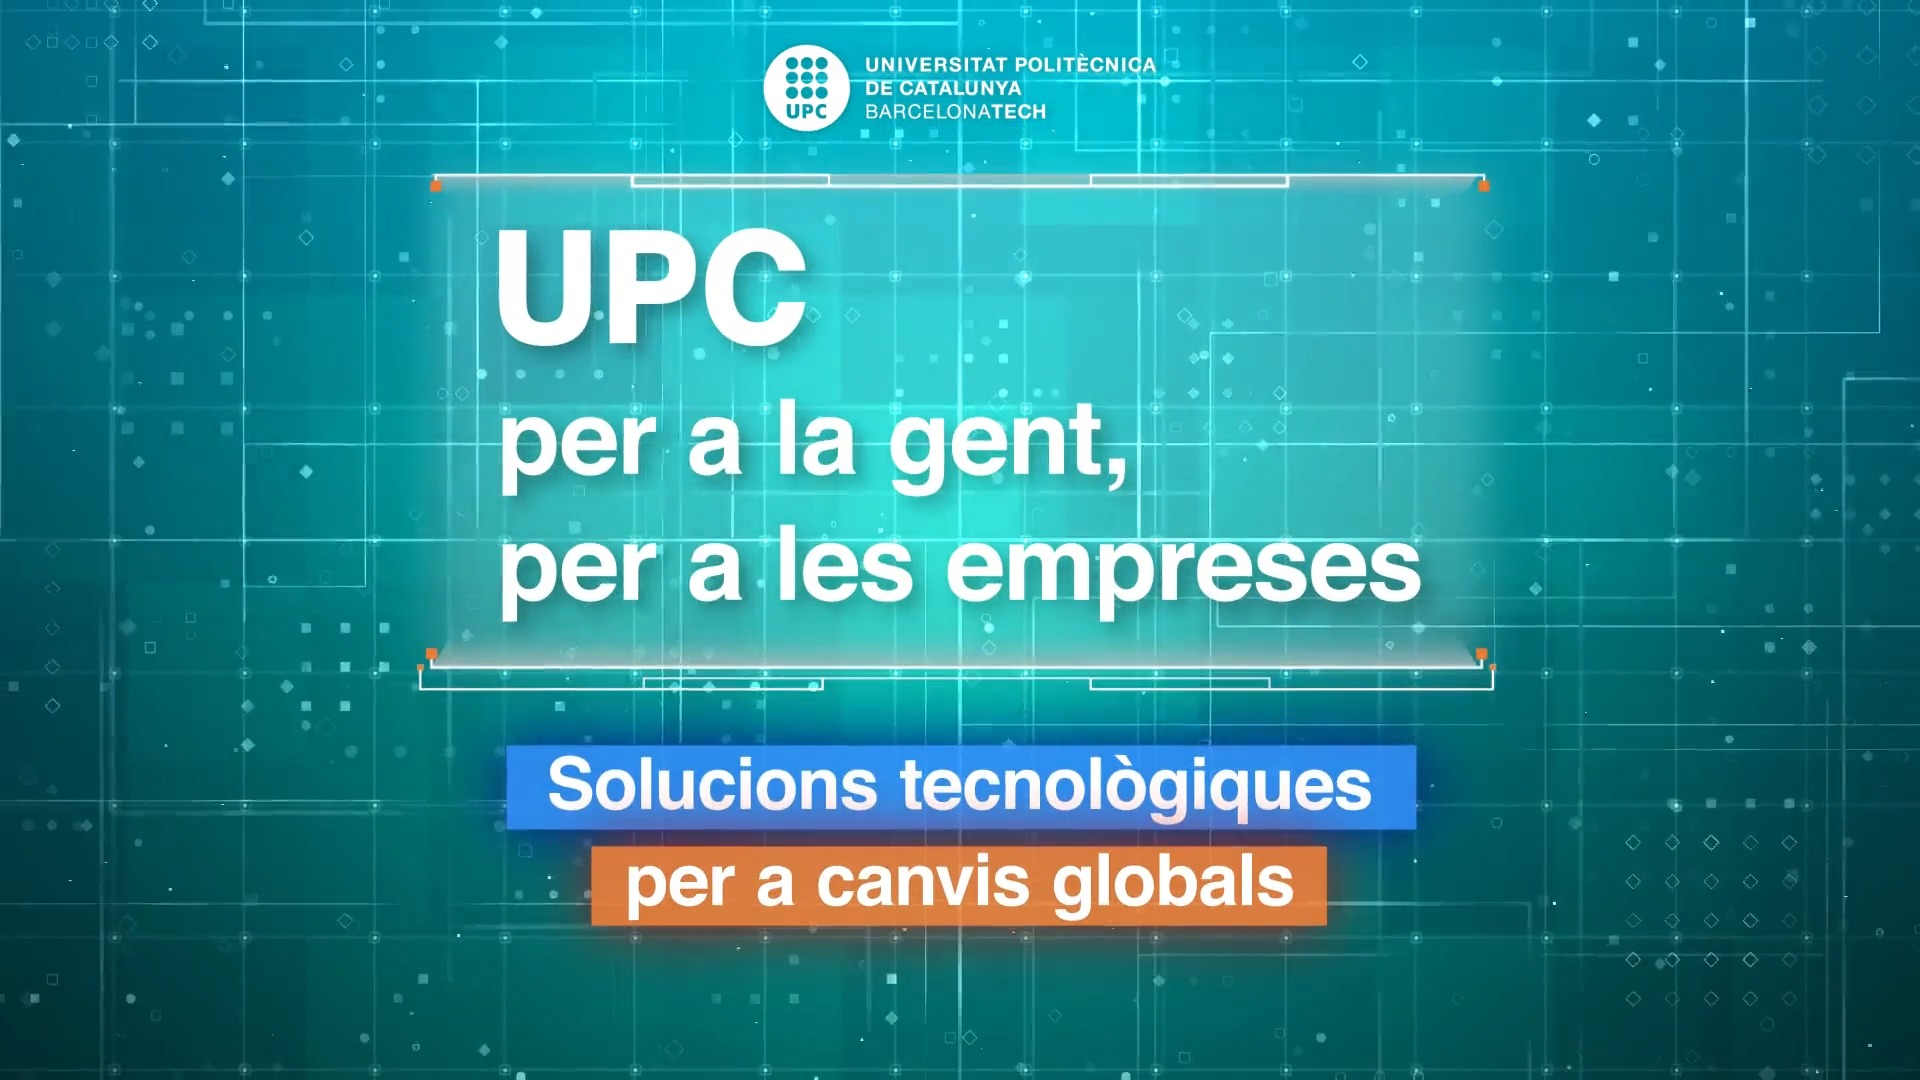 UPC per a la gent, per a les empreses. Solucions tecnològiques per a canvis globals